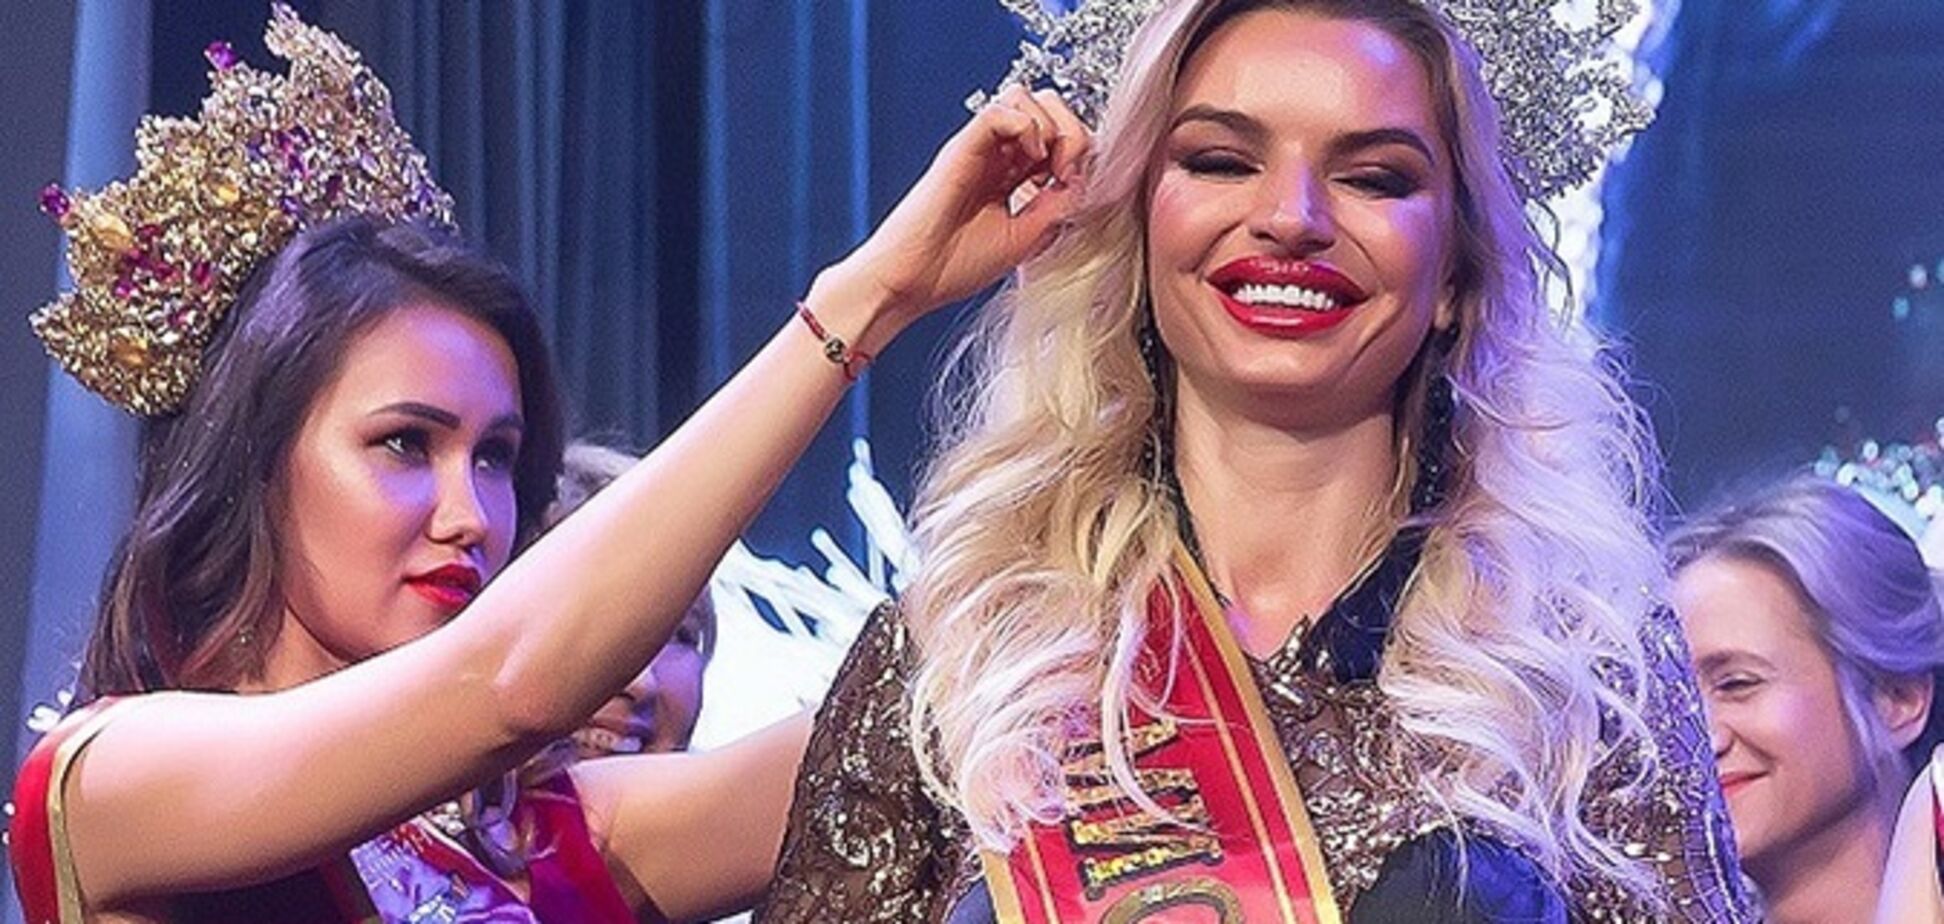 Українка отримала титул ''Місіс Москва-2018'': модель зацькували через Євромайдан